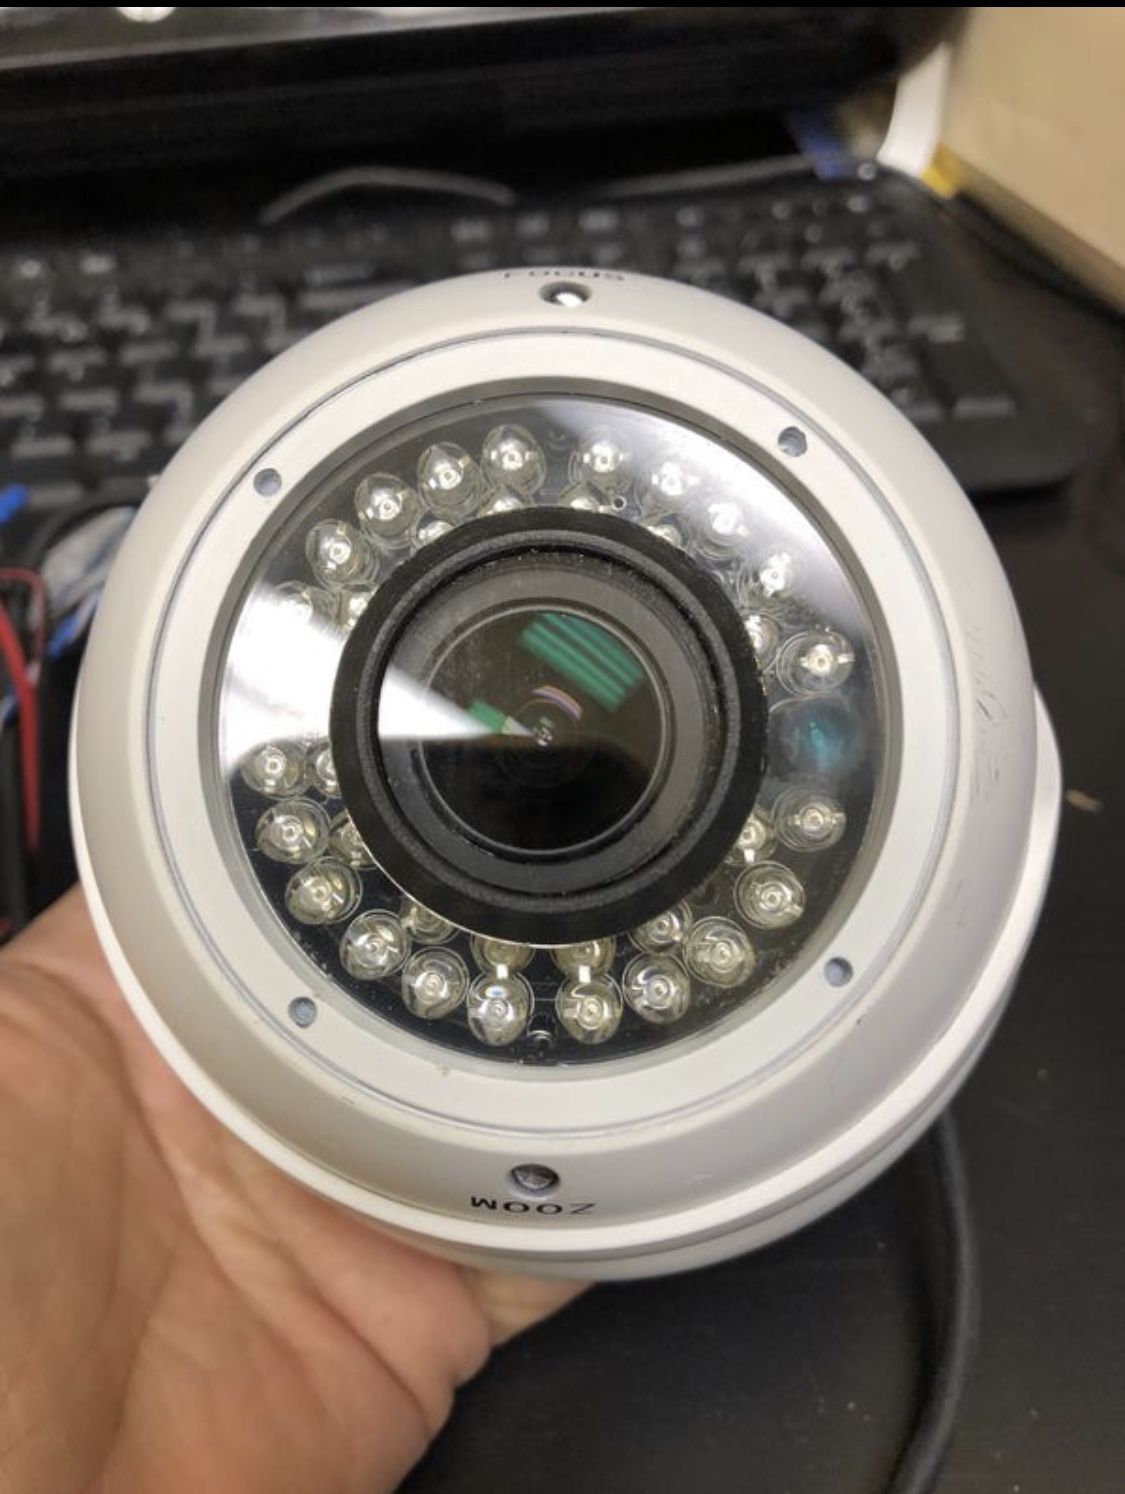 (16) IR LED Surveillance Camera System with DVR